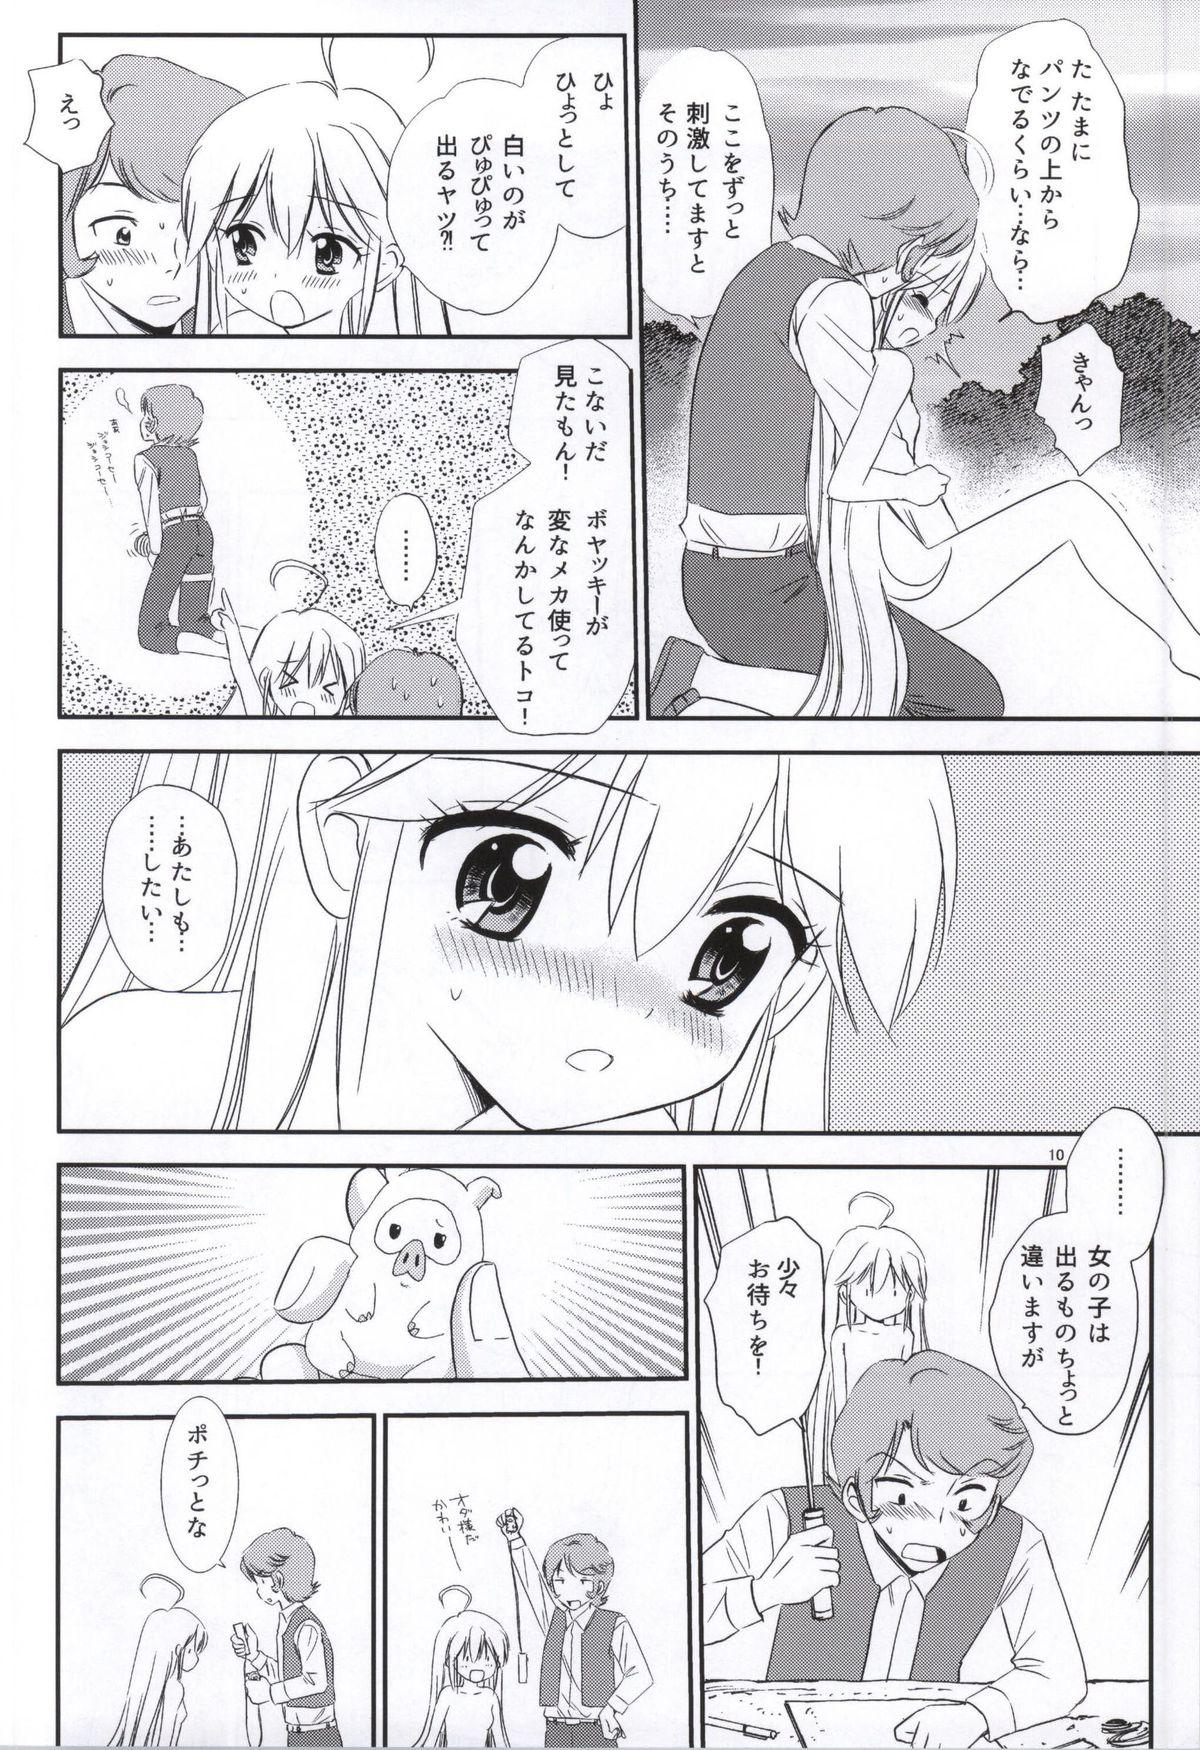 Oral Sex Yoru no Bikkuri Dokkiri Mecha Hasshin! - Yoru no yatterman Facefuck - Page 7